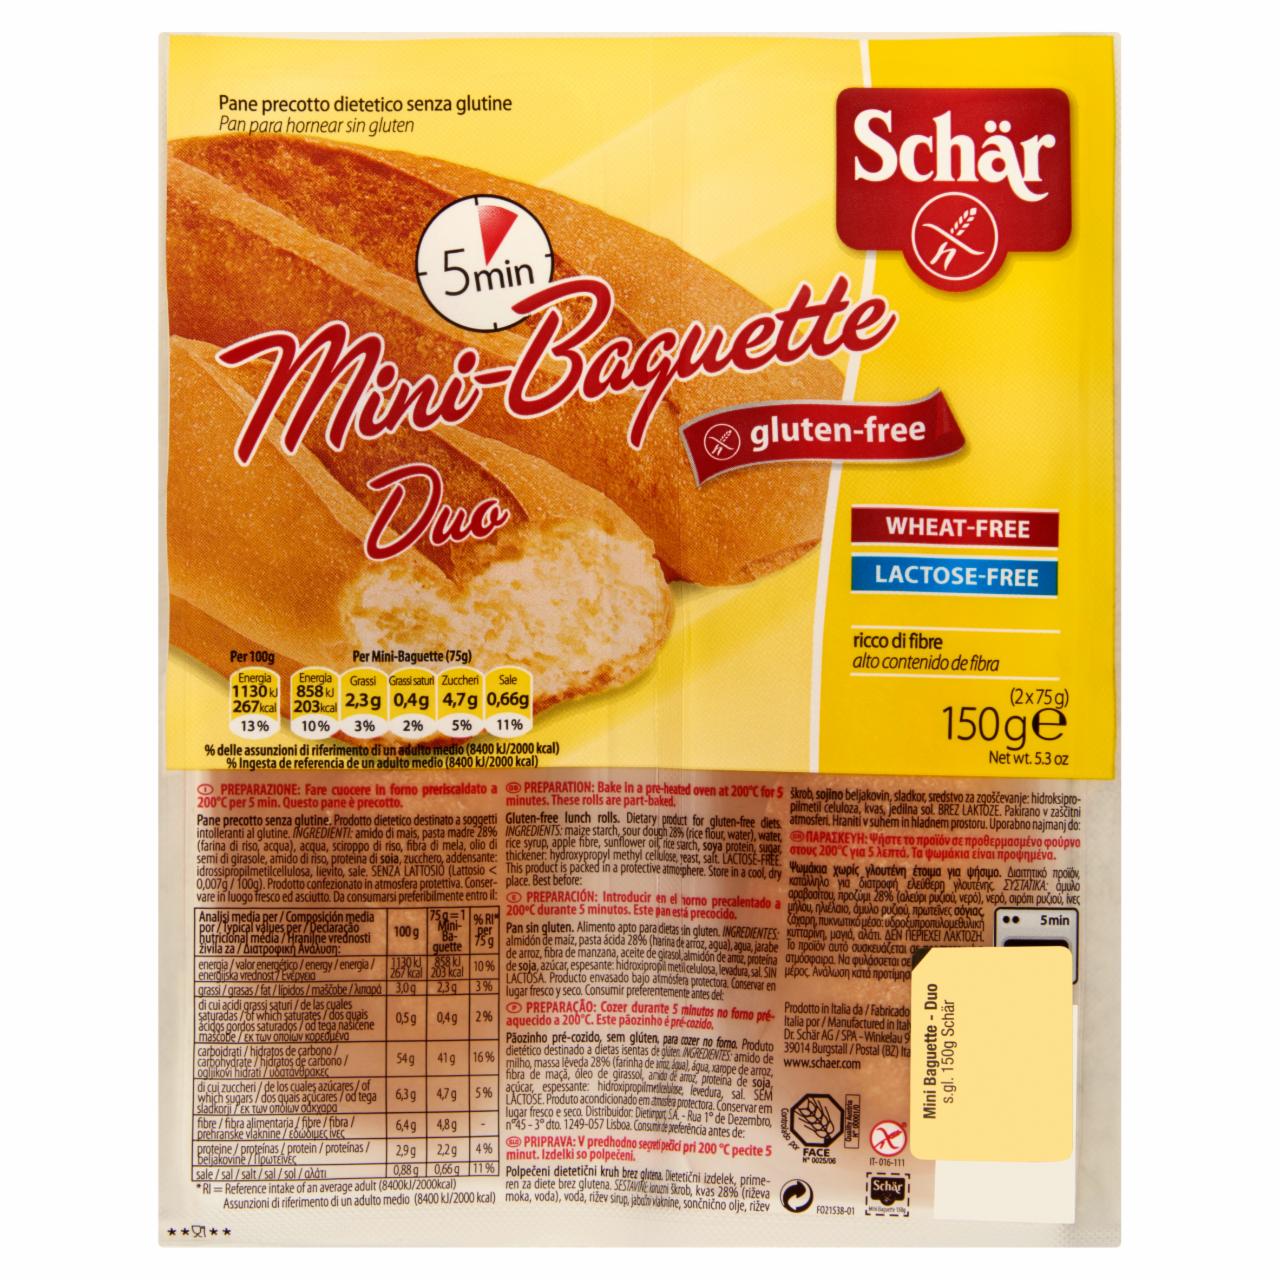 Photo - Schär Pre-Baked Gluten Free Mini Baguette 2 x 75 g (150 g)